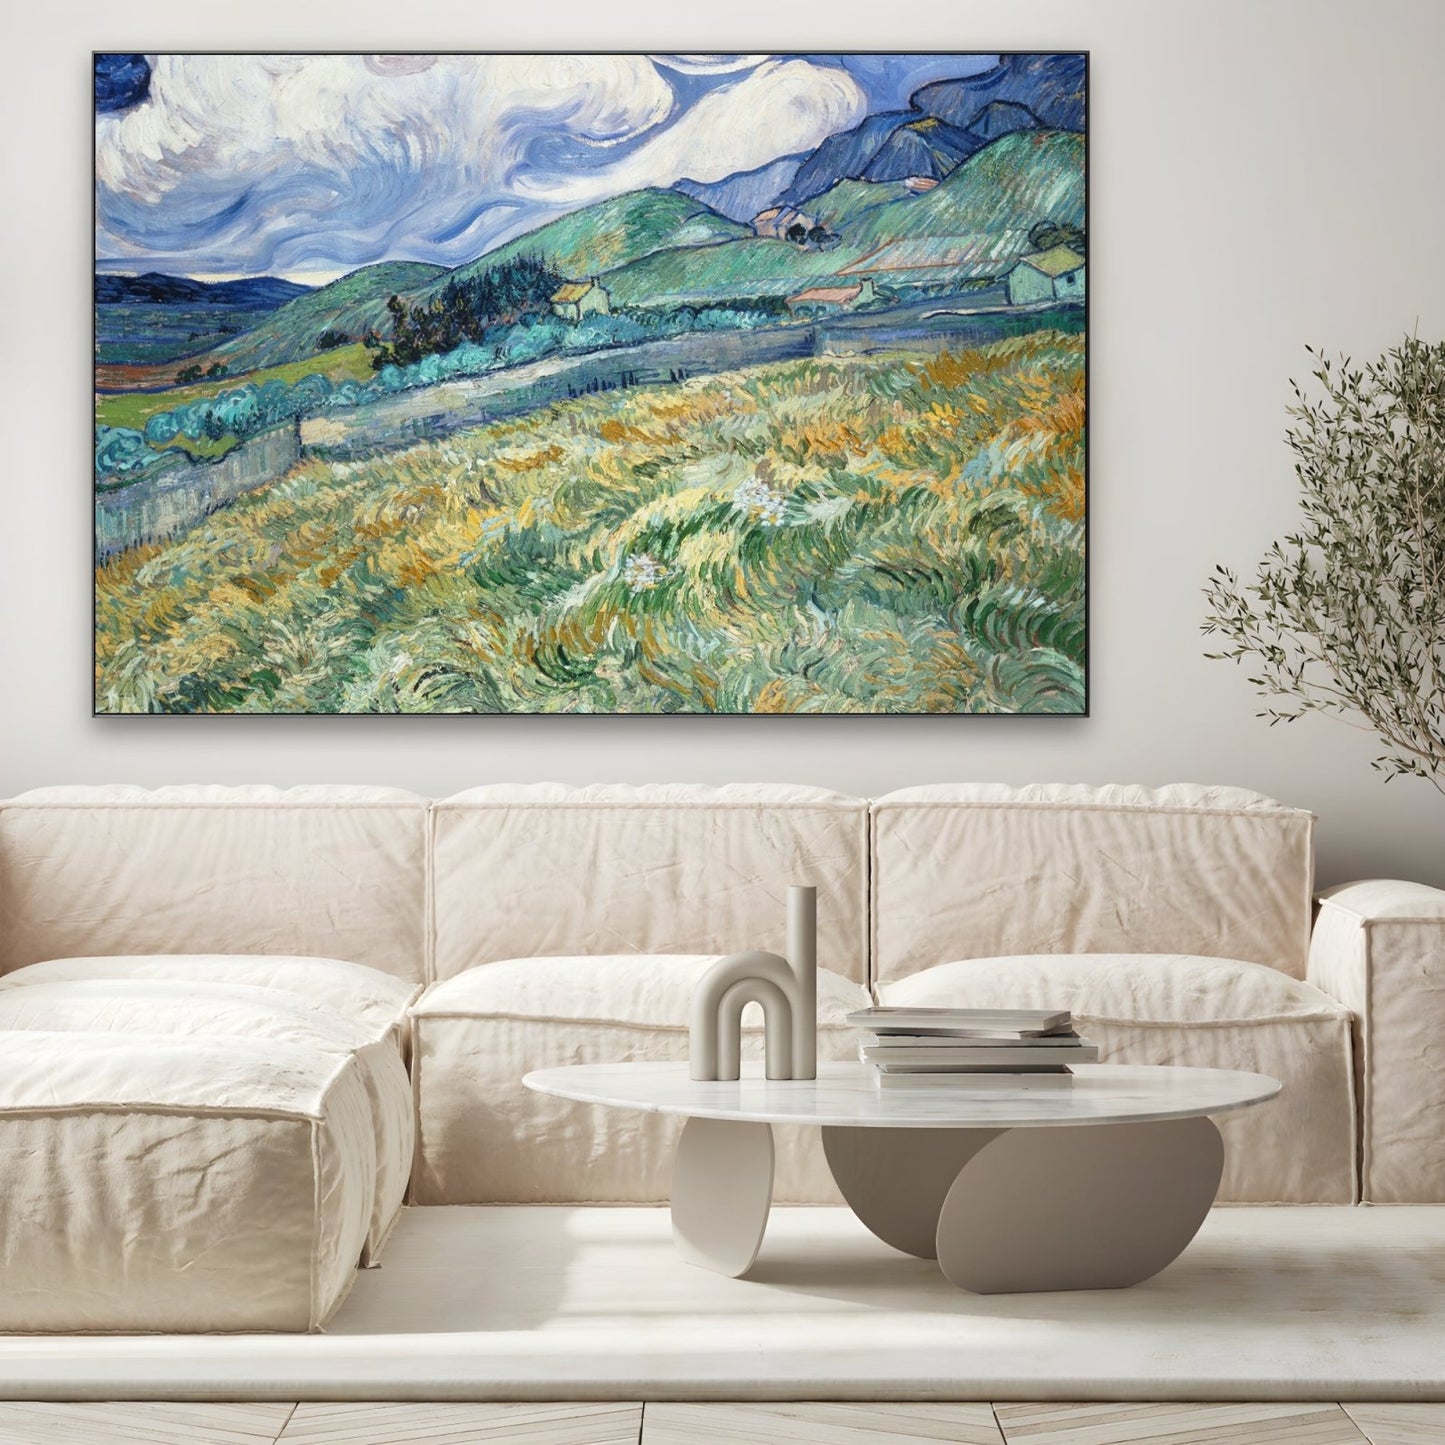 Campo de trigo y montañas 1889, Vincent Van Gogh